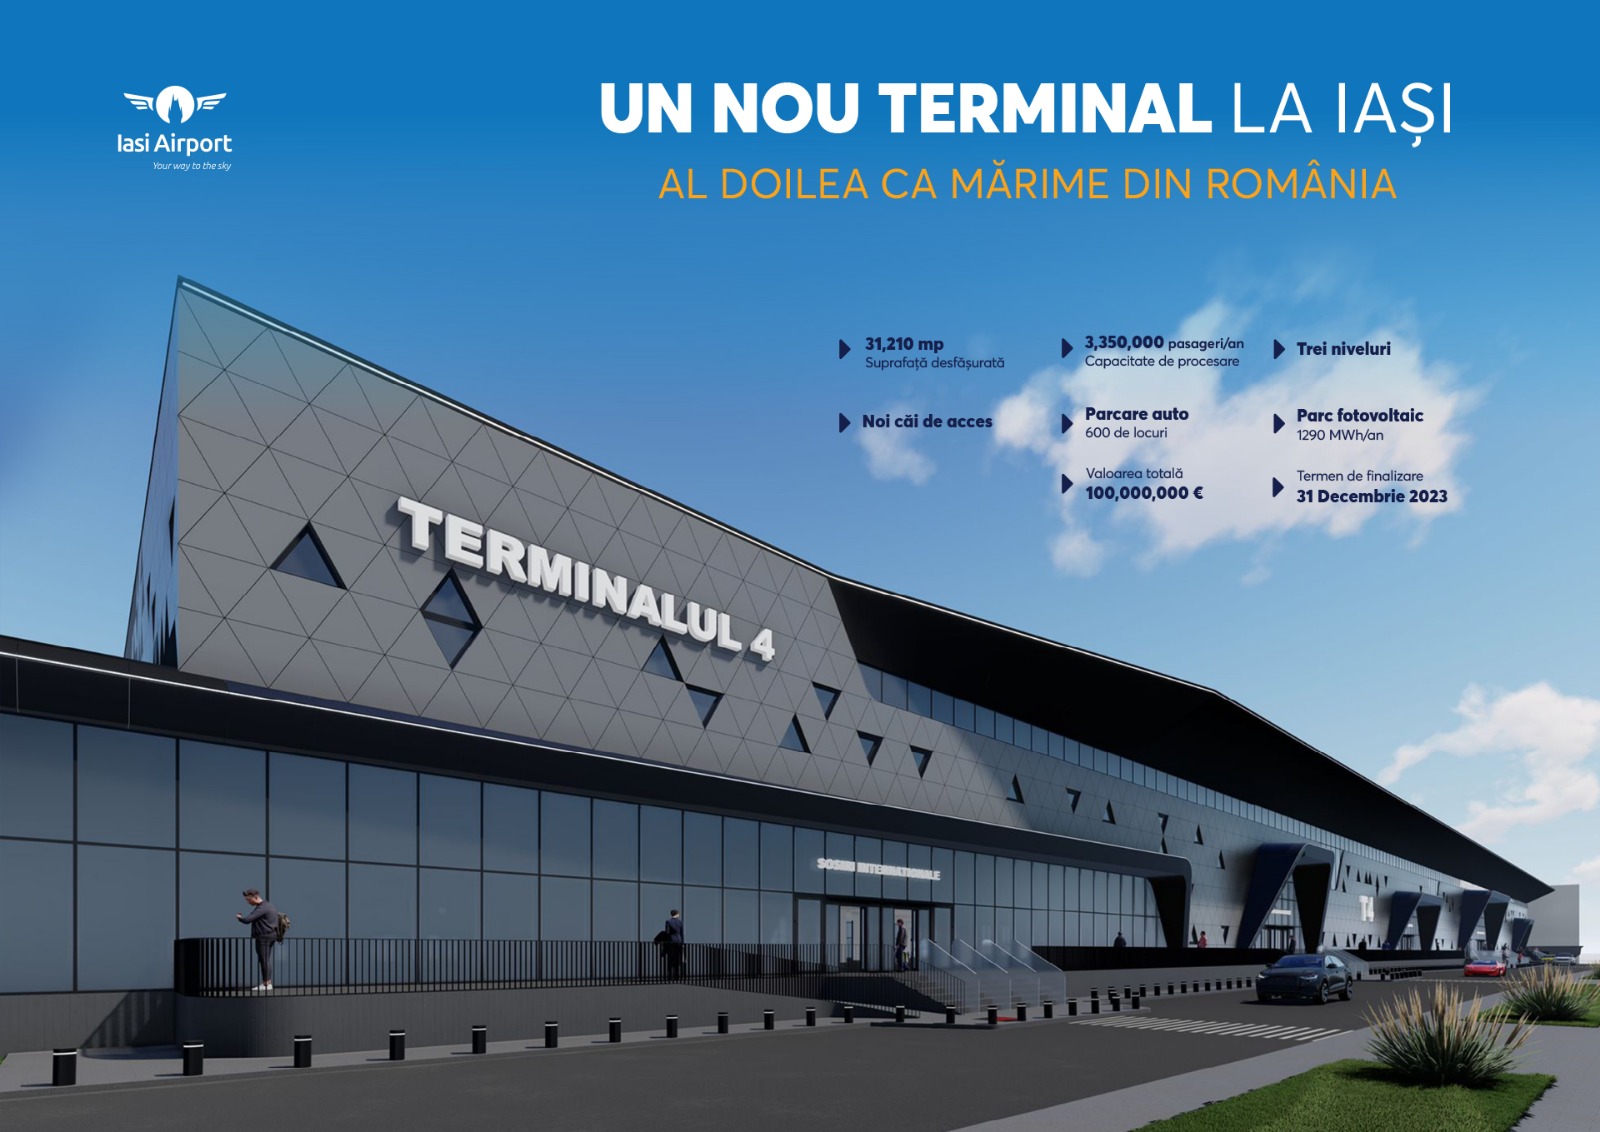 Romanya’nın en modern havalimanı terminali Iaşi’da